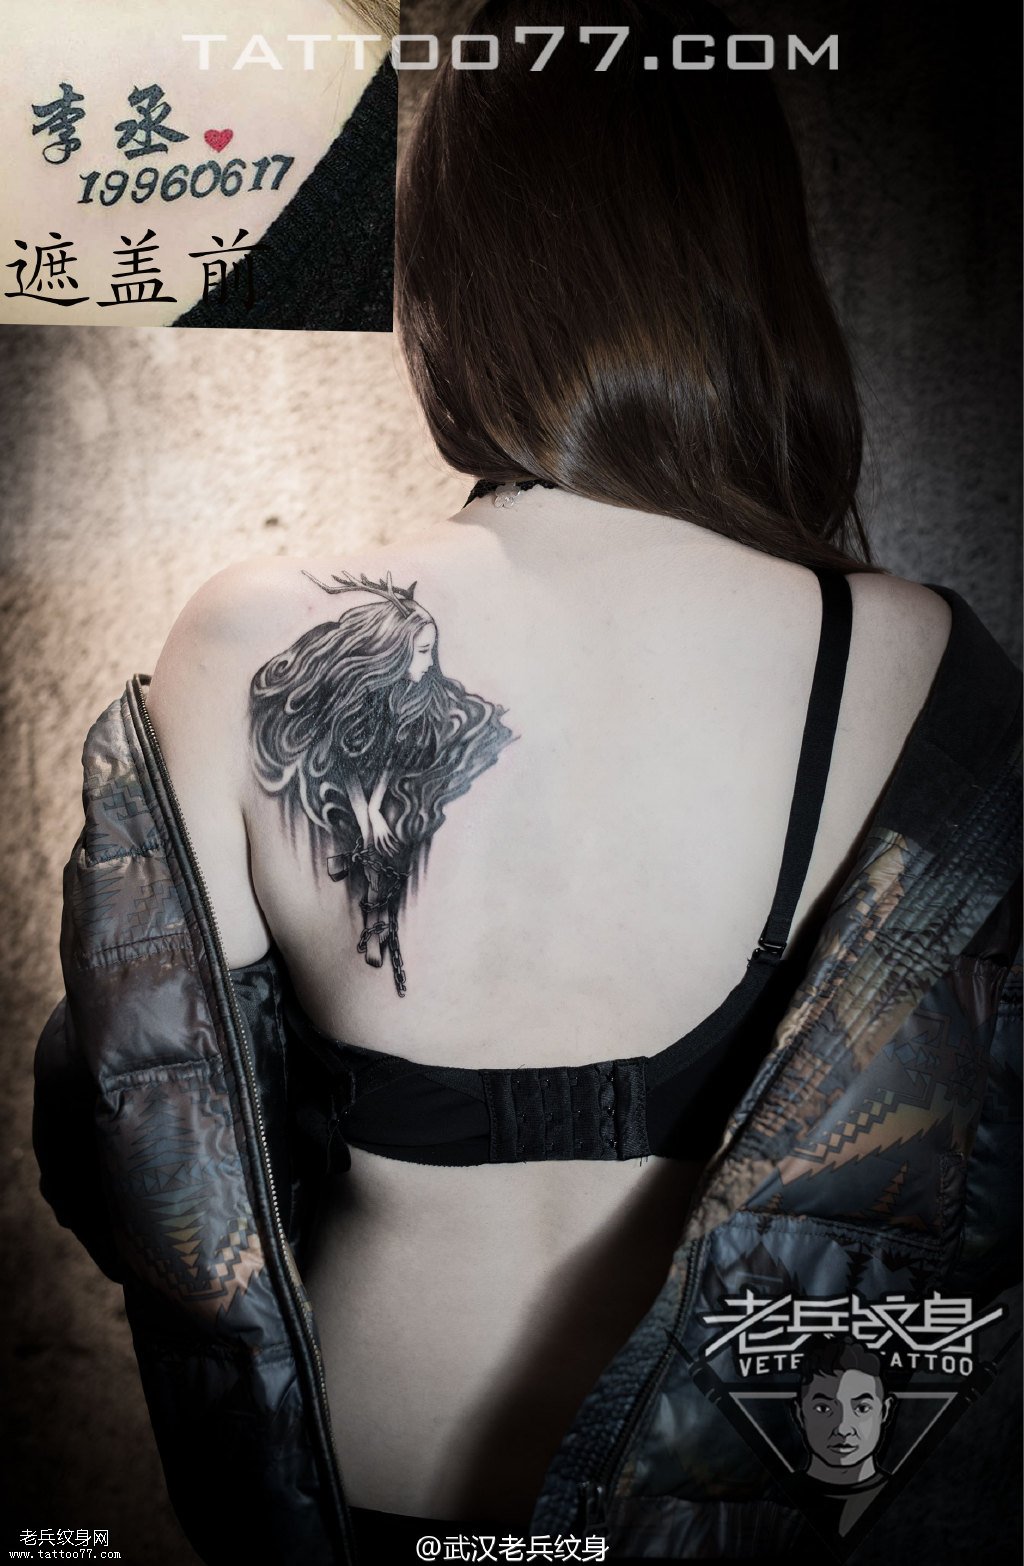 后背鹿女孩纹身图案作品遮盖旧纹身